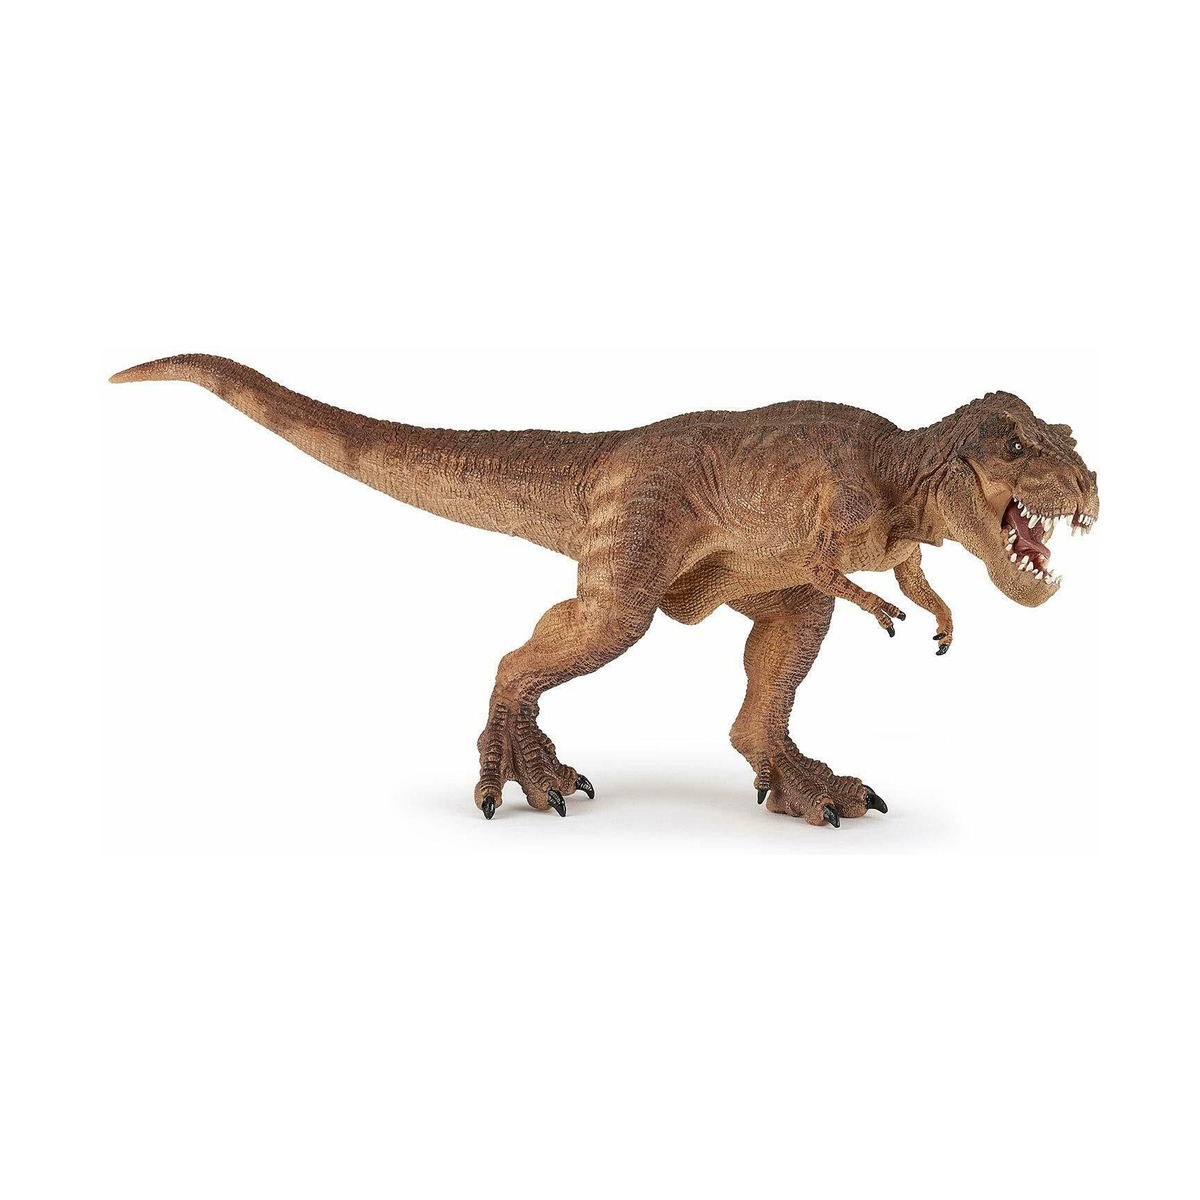 Коричневый тираннозавр Рекс от Papo за 3 941 руб., купить на Kidsen.ru Арт. 55075